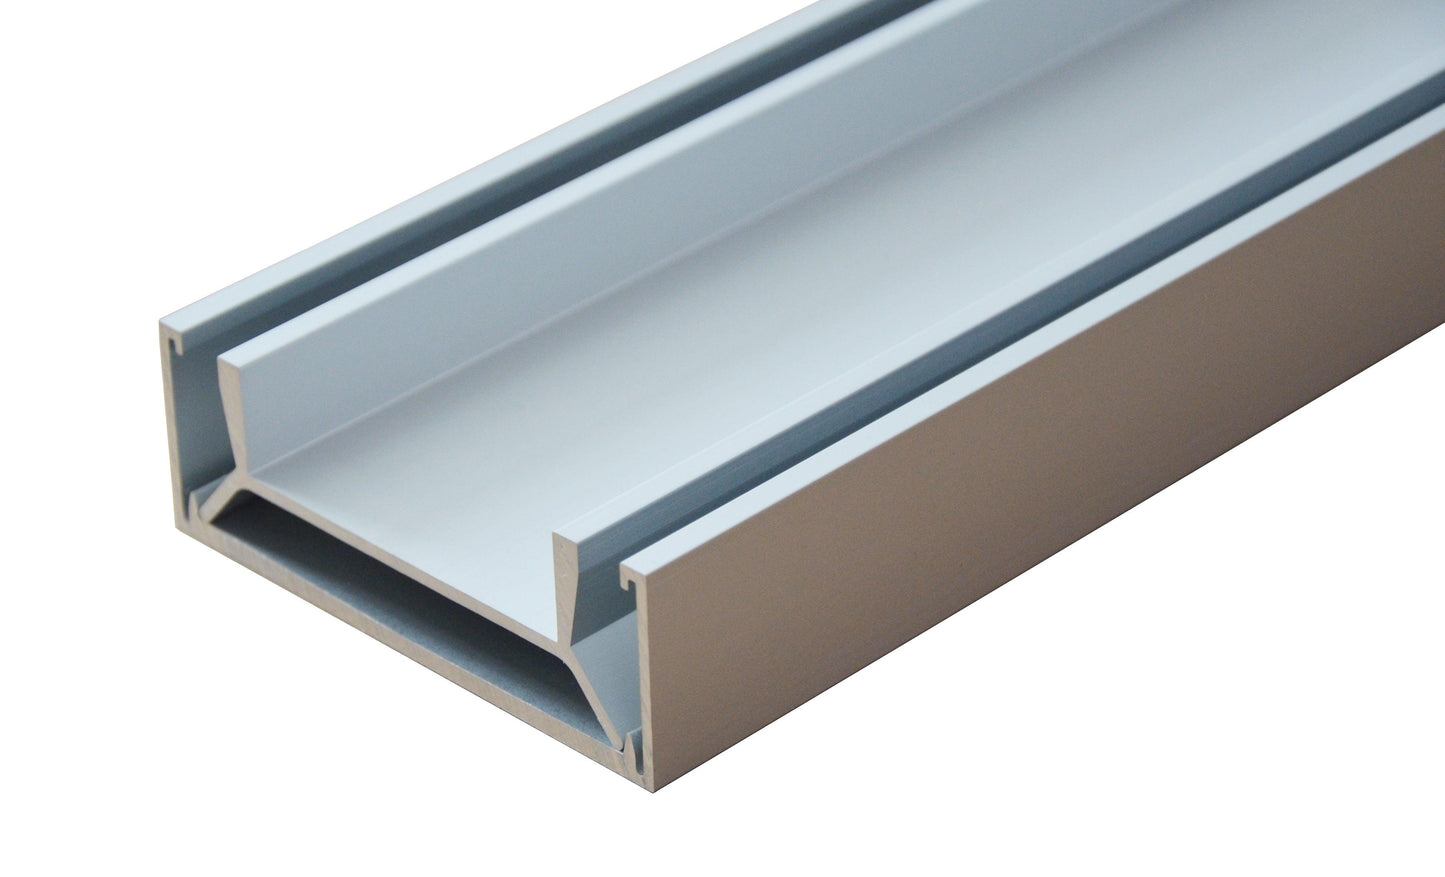 2400mm Aluminium Rust Proof Tile Insert Strip Shower Grate Drain Indoor Outdoor